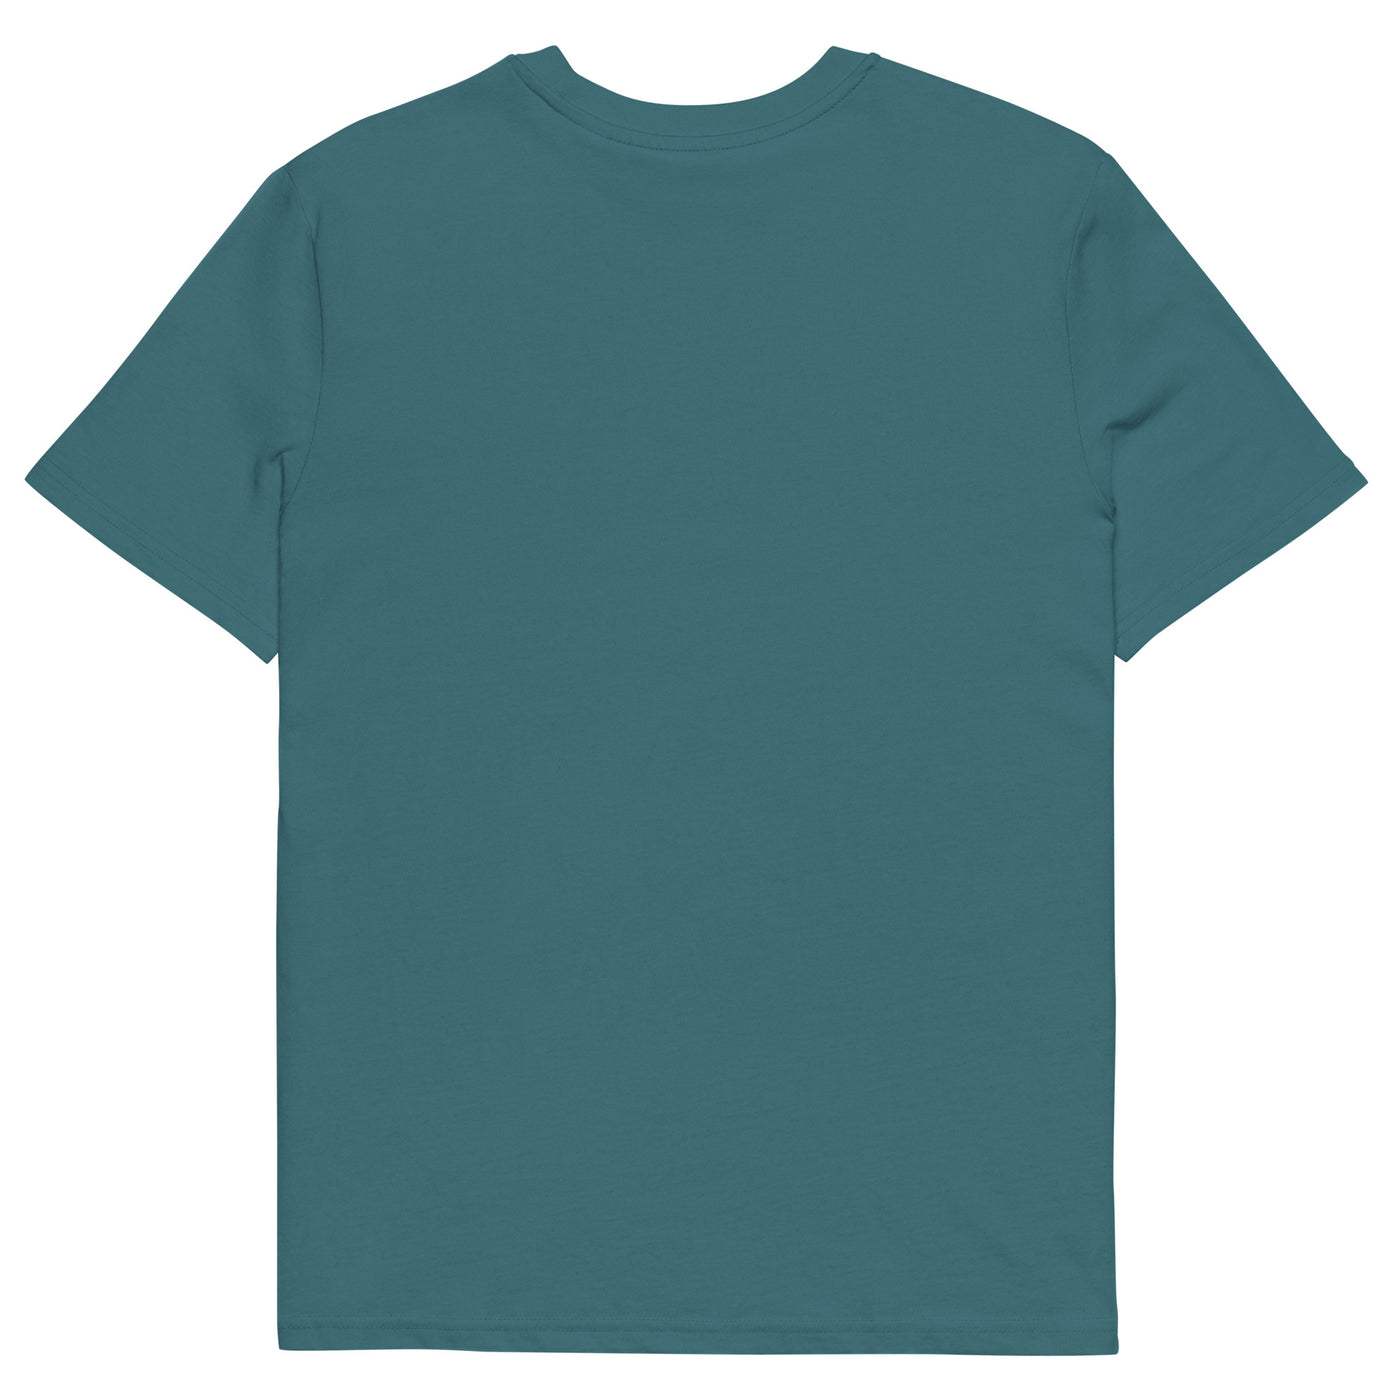 So Sieht Ein Cooler Gleitschirmflieger Aus - Herren Premium Organic T-Shirt berge xxx yyy zzz